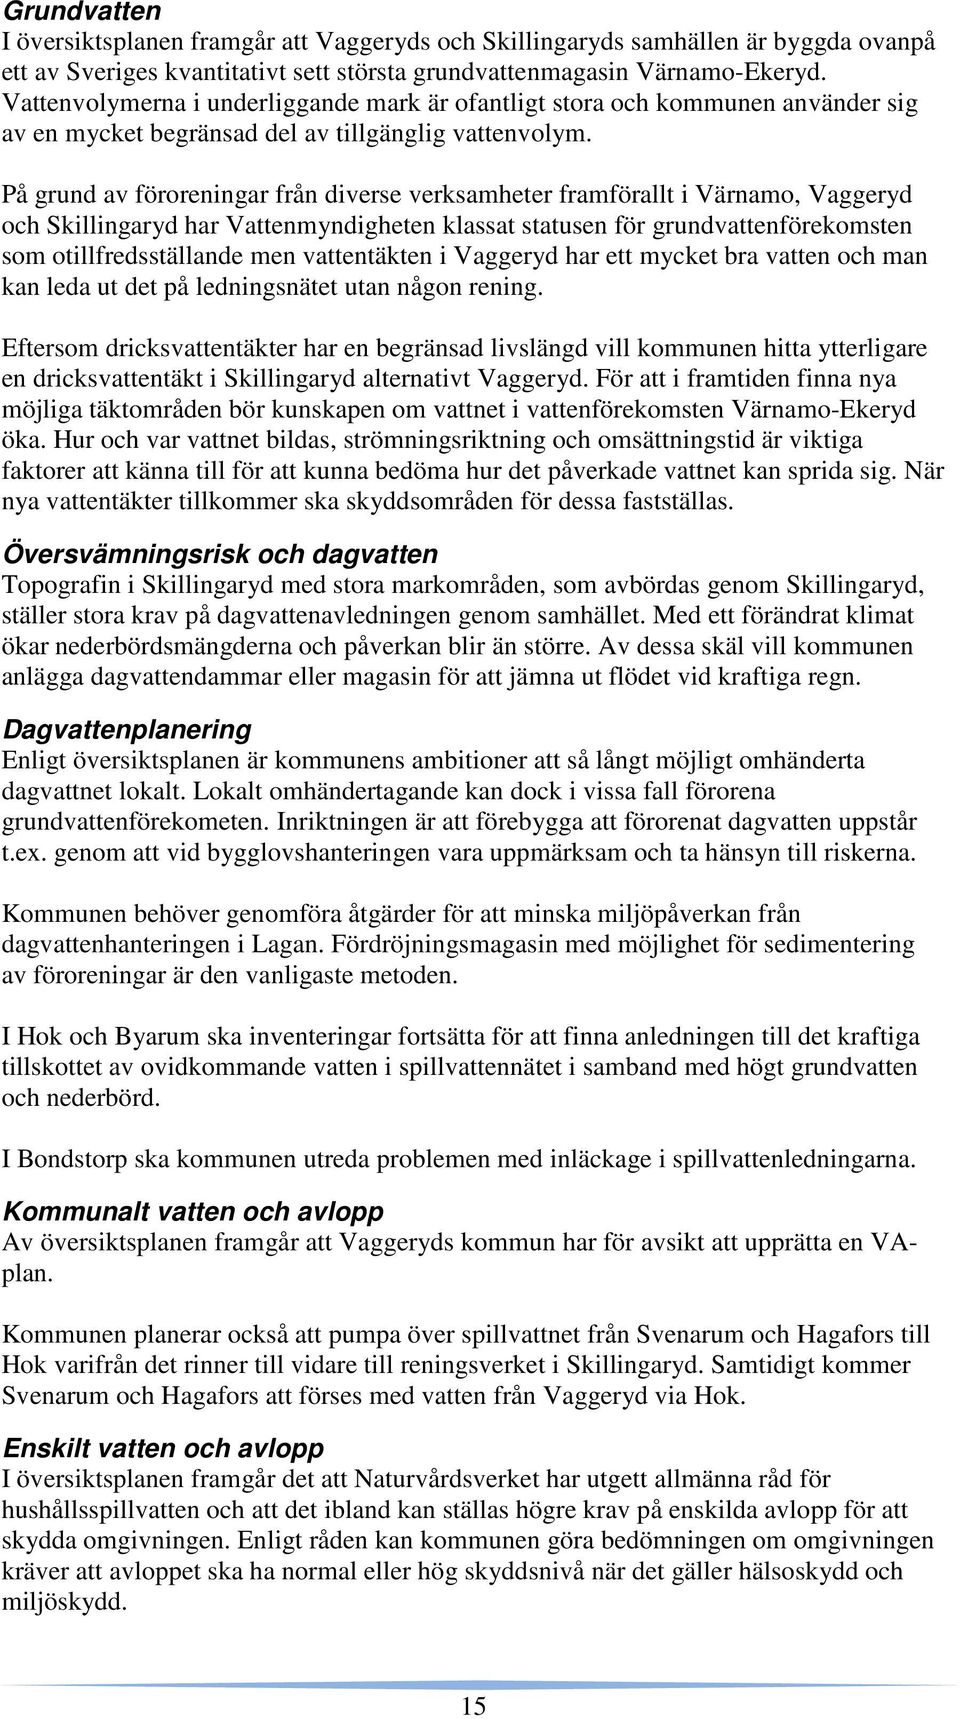 På grund av föroreningar från diverse verksamheter framförallt i Värnamo, Vaggeryd och Skillingaryd har Vattenmyndigheten klassat statusen för grundvattenförekomsten som otillfredsställande men